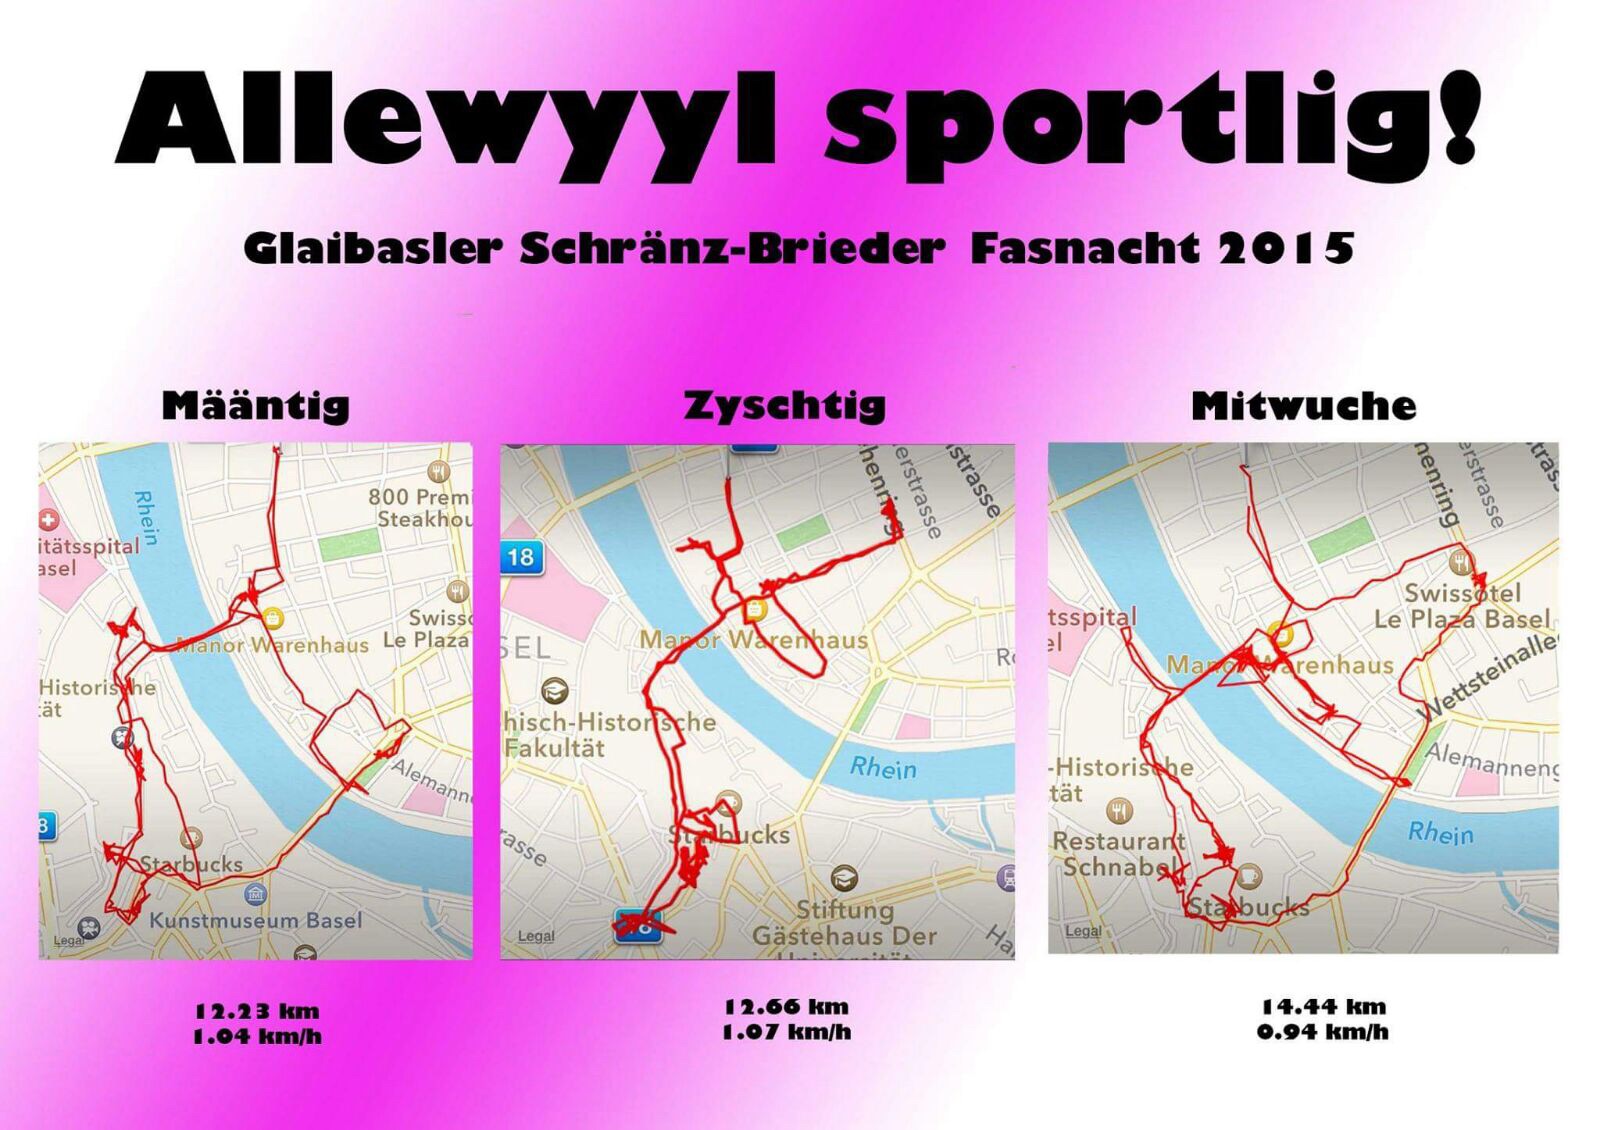 Auch dieses Jahr wollen sie Glaibasler Schränz-Brieder wieder tracken. Hier: Die Route an der Fasnacht 2015 mit einem vermeintlichen Bad im Rhein am Mittwoch.